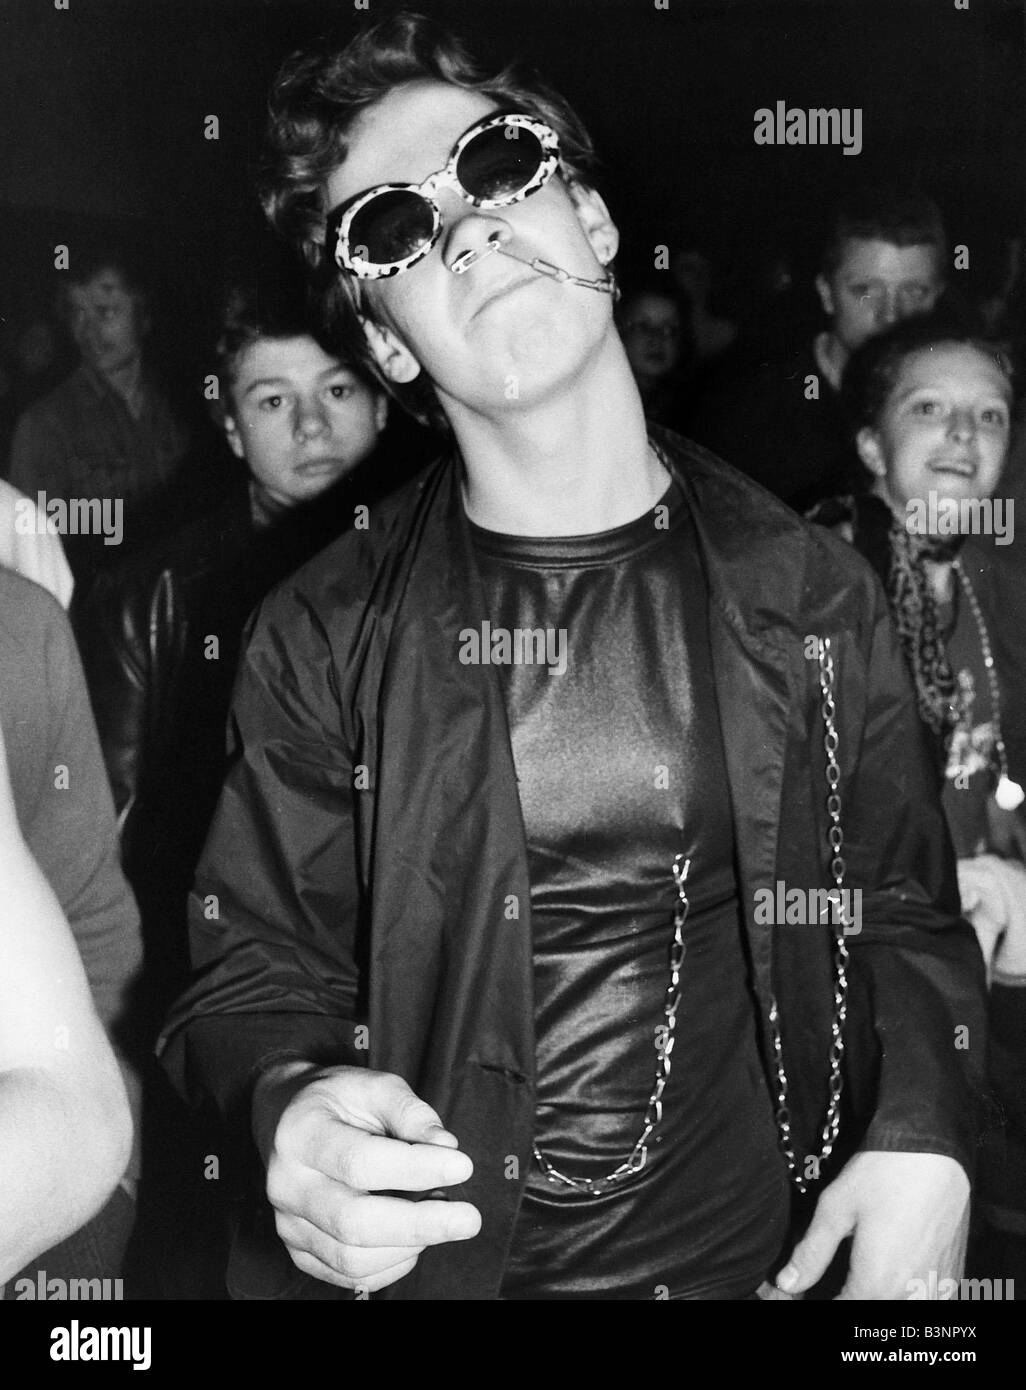 Punk Rocker danse avec goupille de sécurité à travers le nez Juin 1977 Banque D'Images